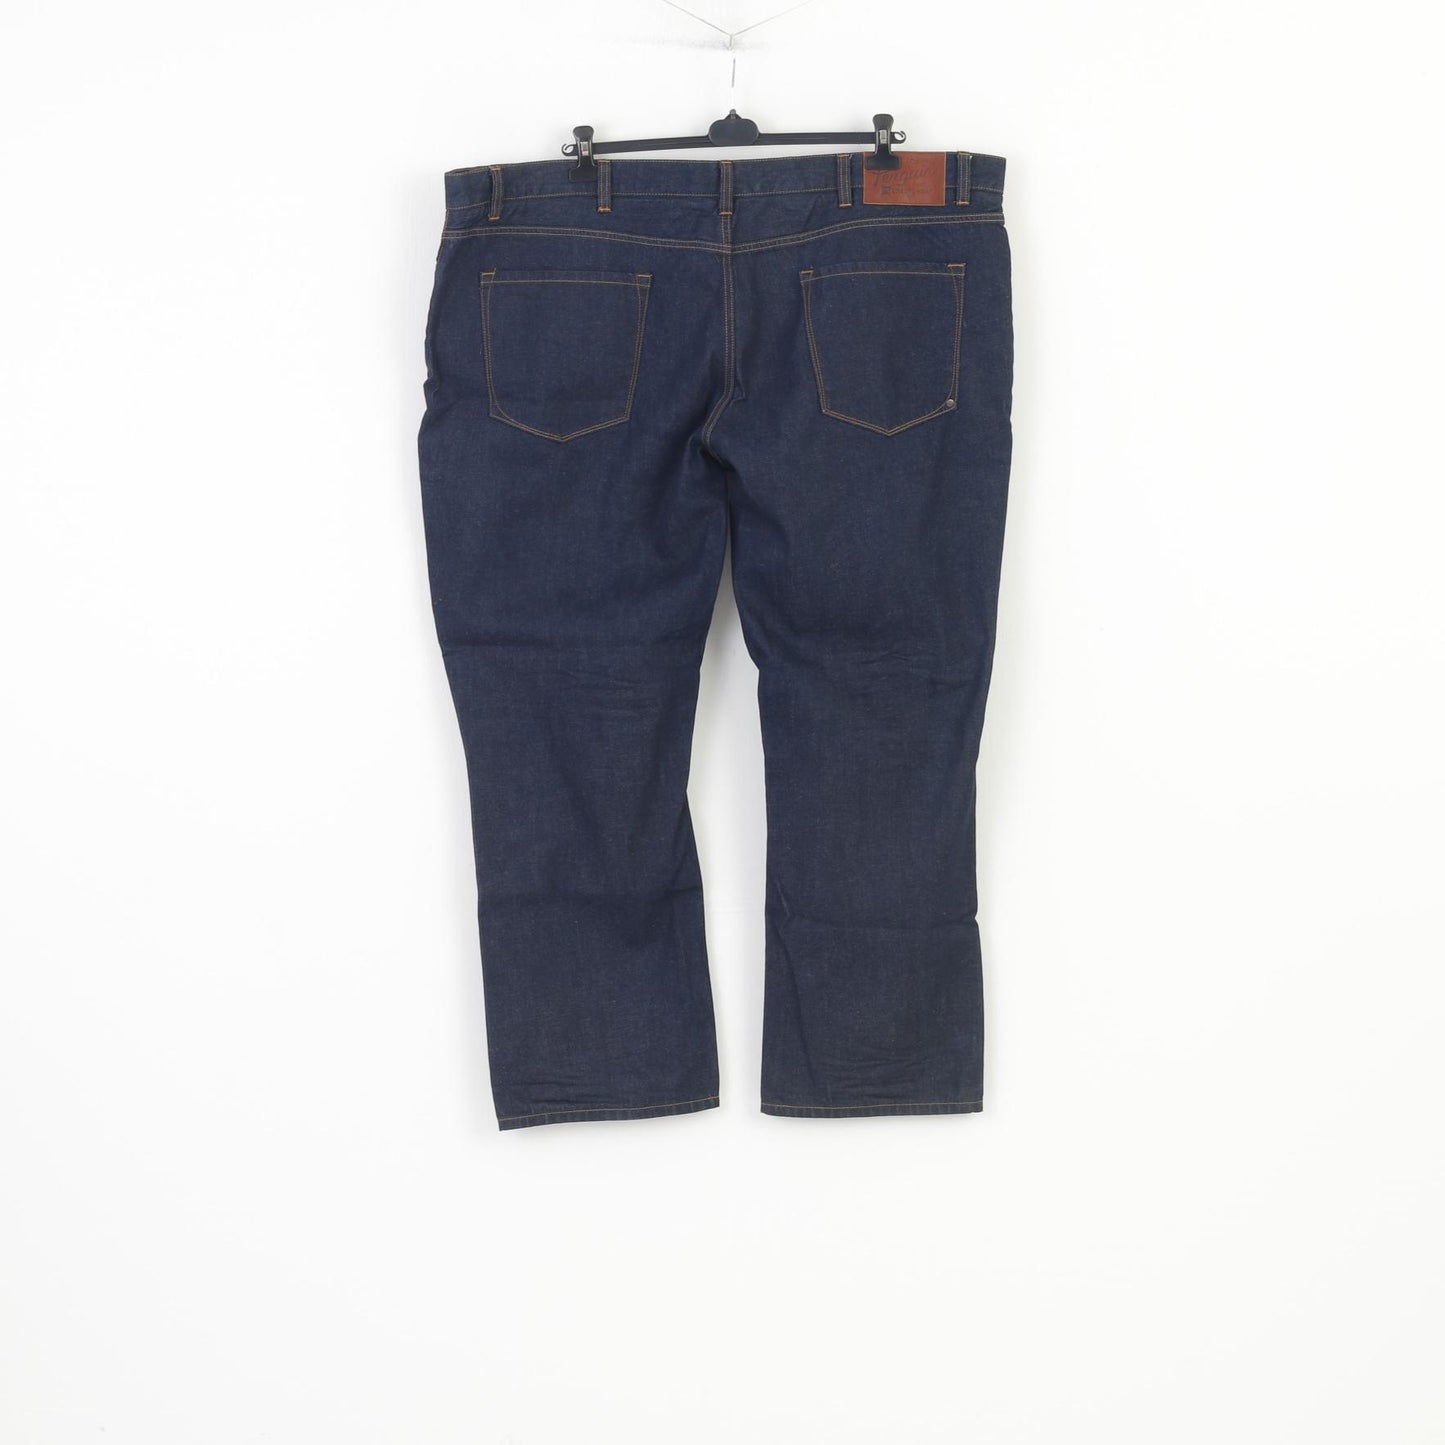 Pantaloni originali Penguin da uomo 52 Jeans in cotone blu scuro Pantaloni vintage di grandi dimensioni in denim